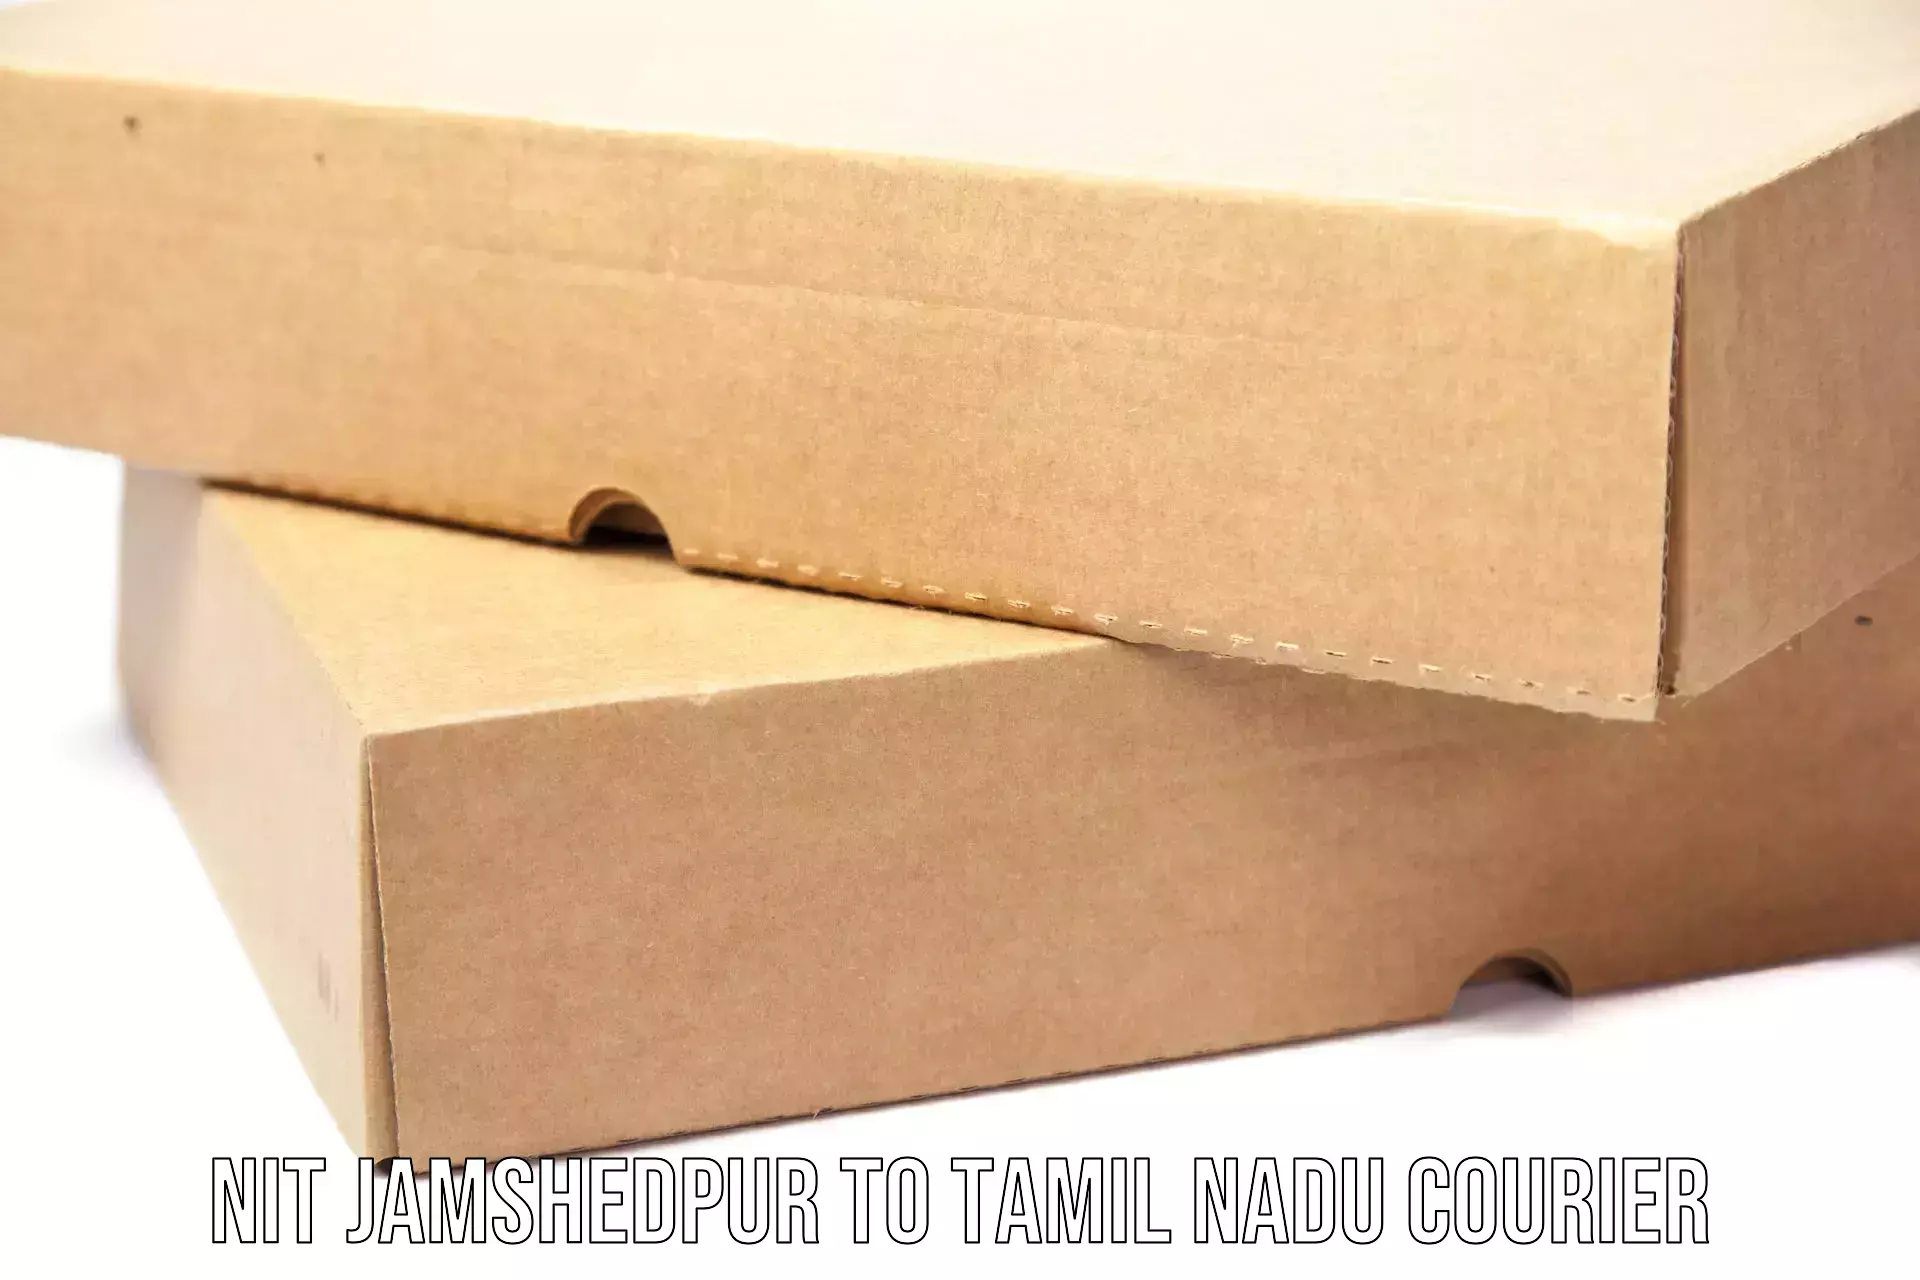 Business shipping needs NIT Jamshedpur to Tirukalukundram